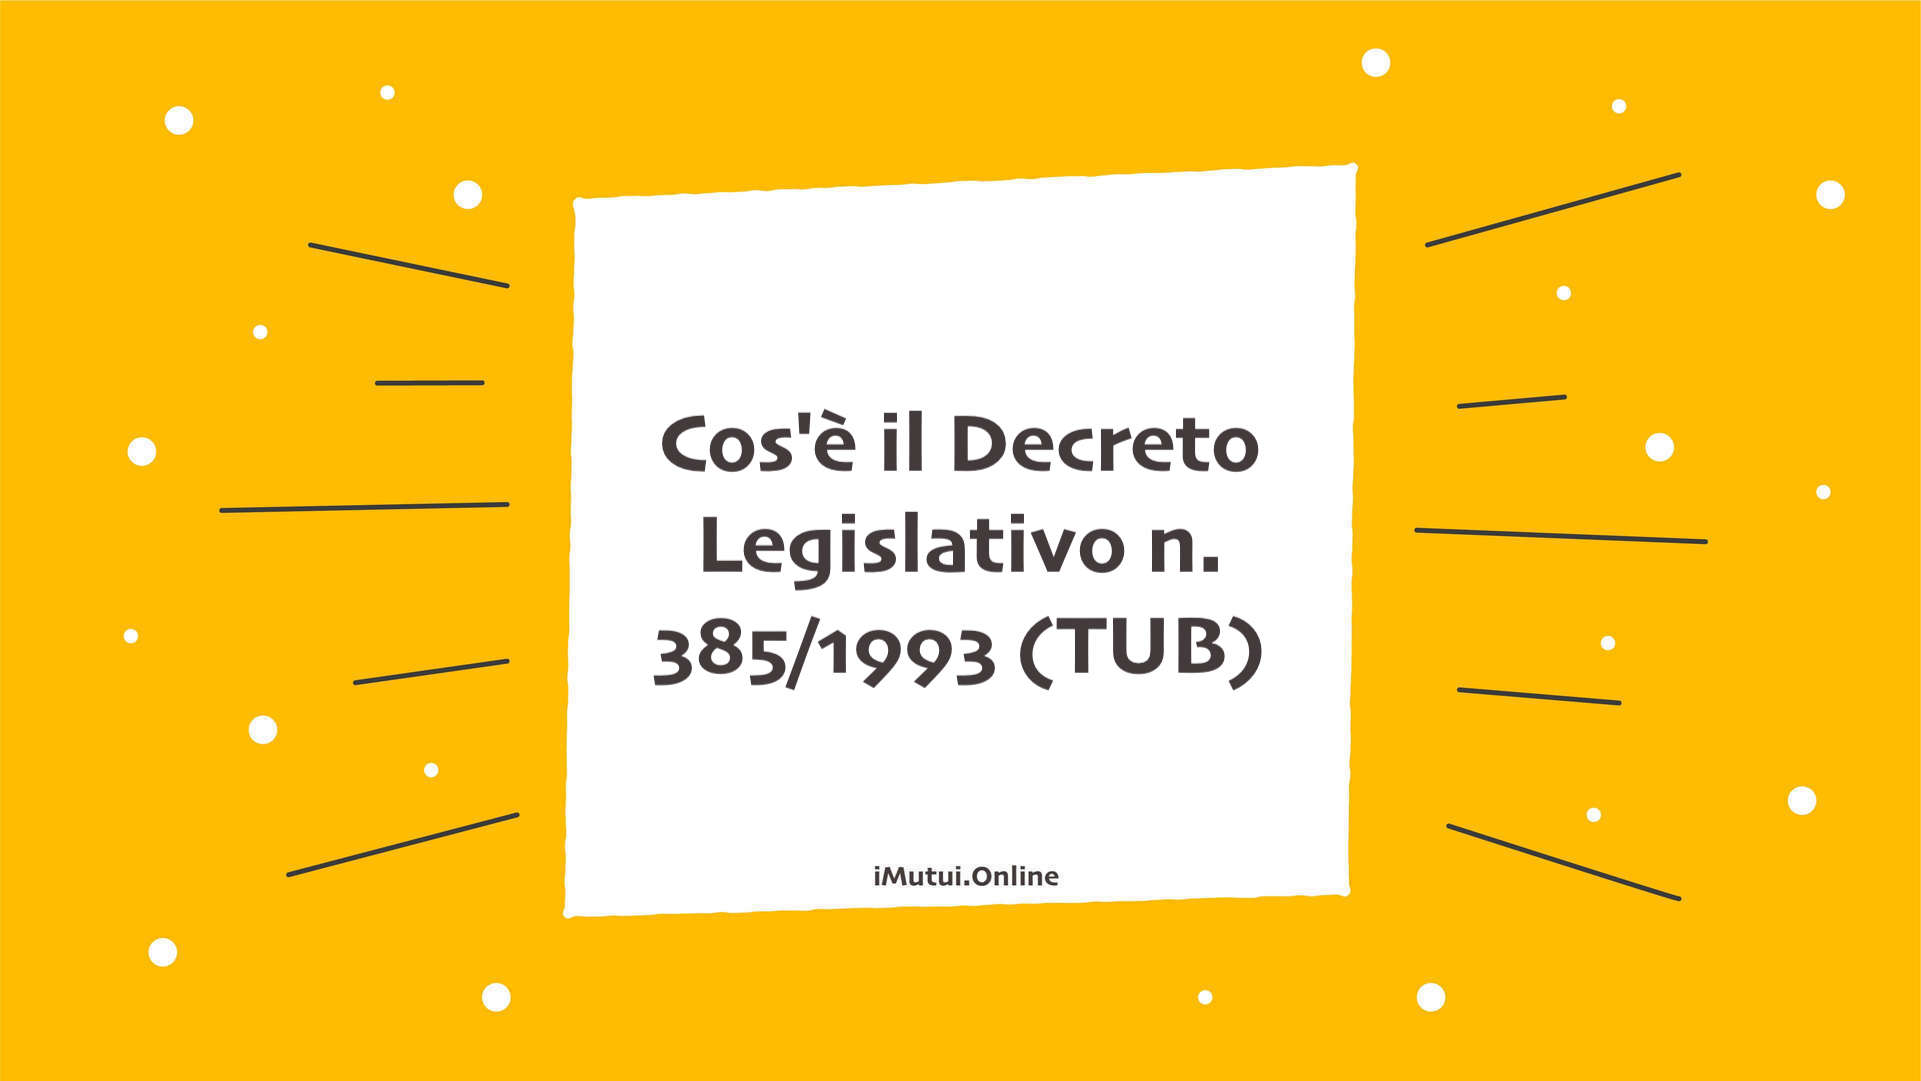 Cos'è il Decreto Legislativo n. 385/1993 (TUB)